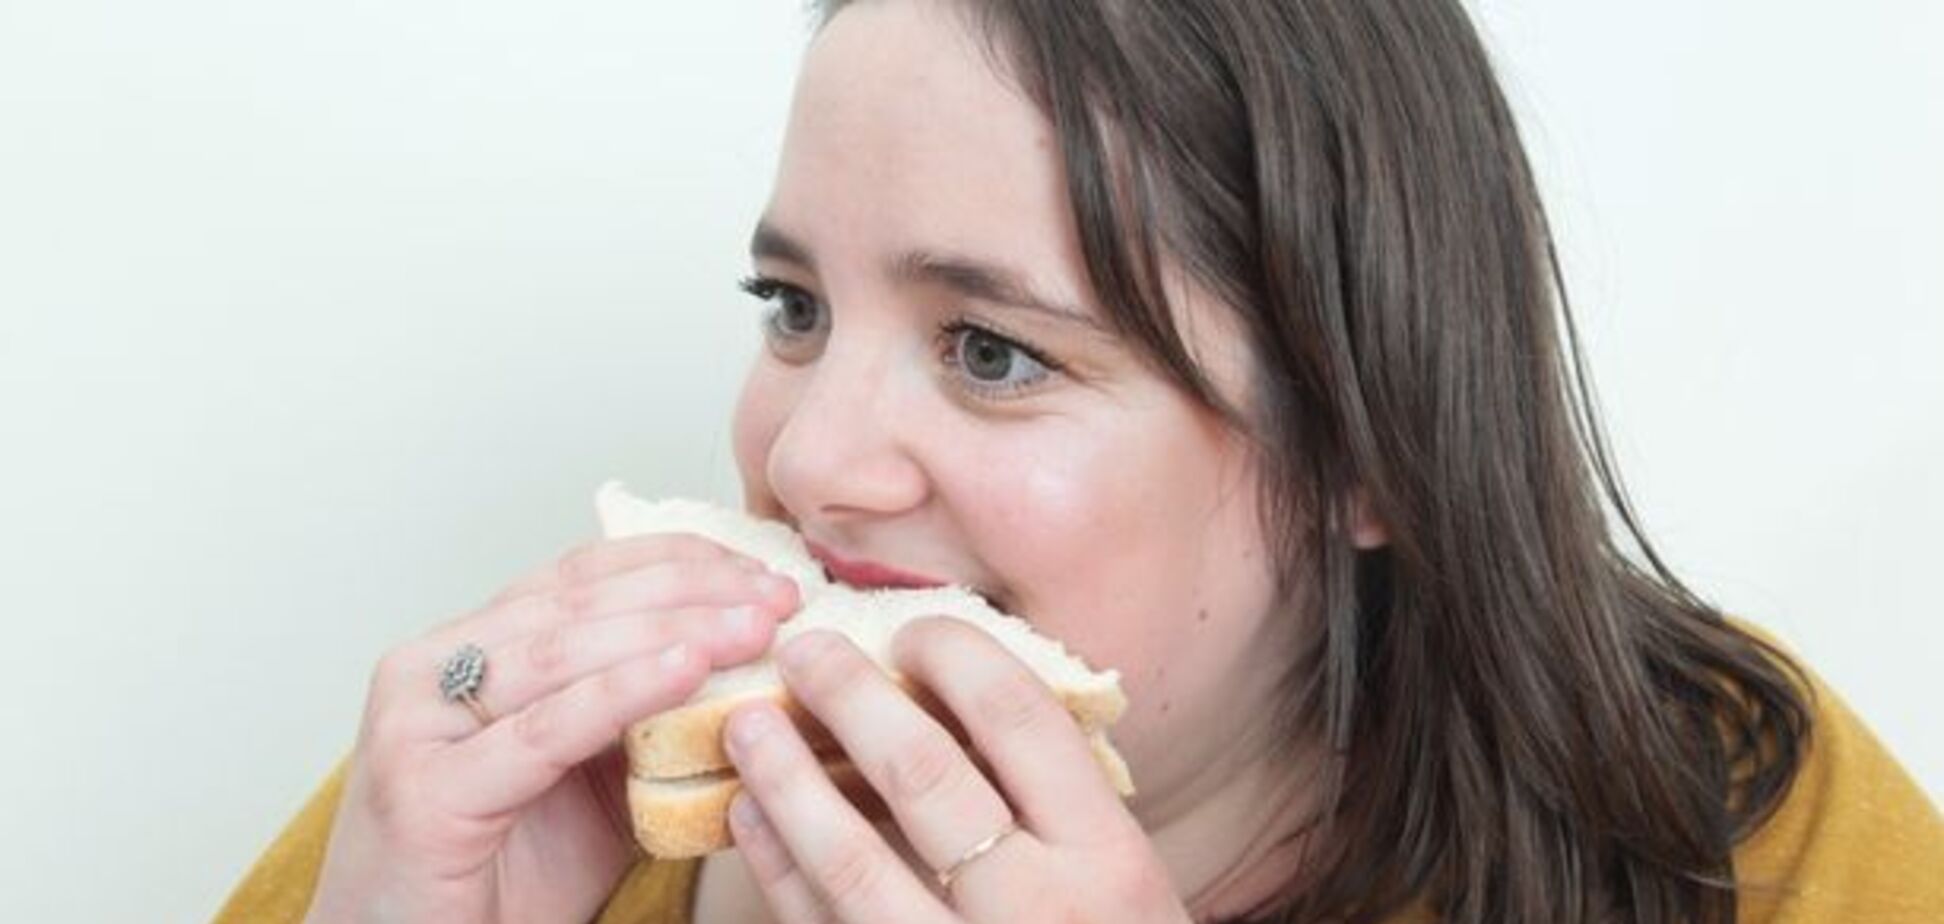 Дівчина через страх їсть тільки бутерброди: фото після 'дієти'